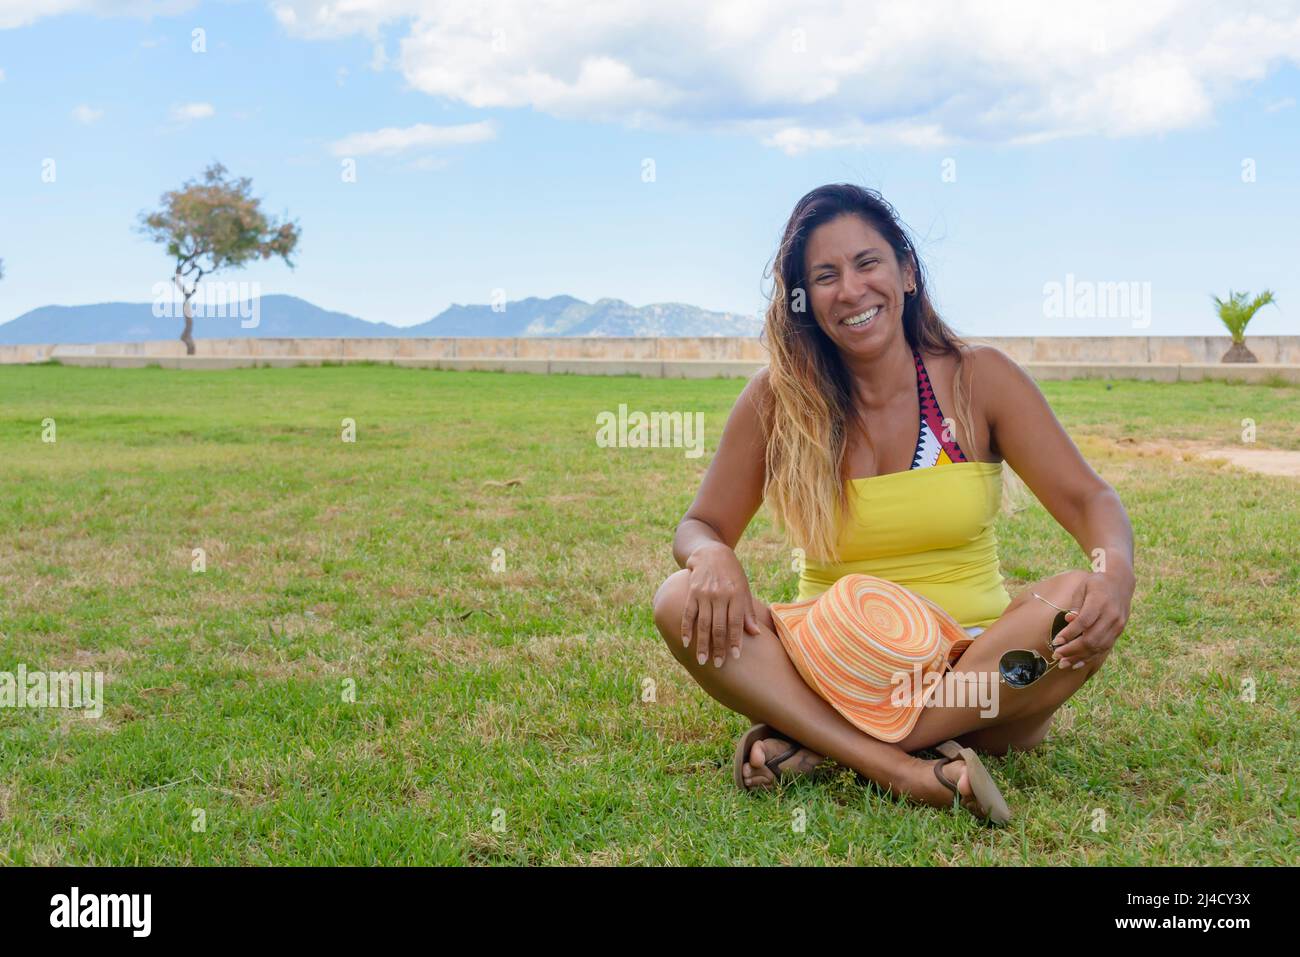 Schöne und glückliche lateinische Frau mit langen Haaren lächelnd, eine gute Zeit, im Urlaub auf mallorca hollidays Konzept Stockfoto